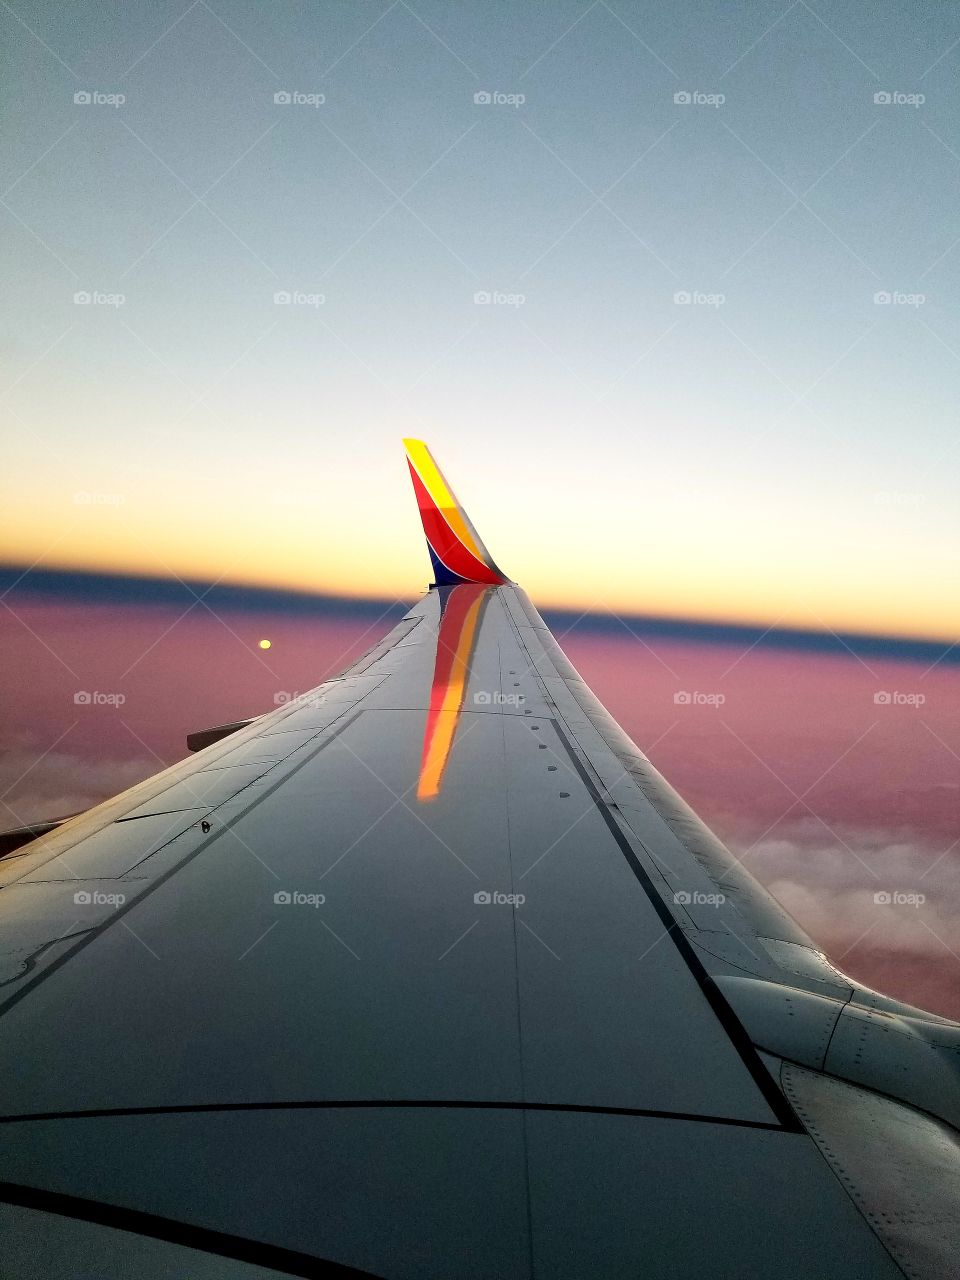 Flying at Dawn